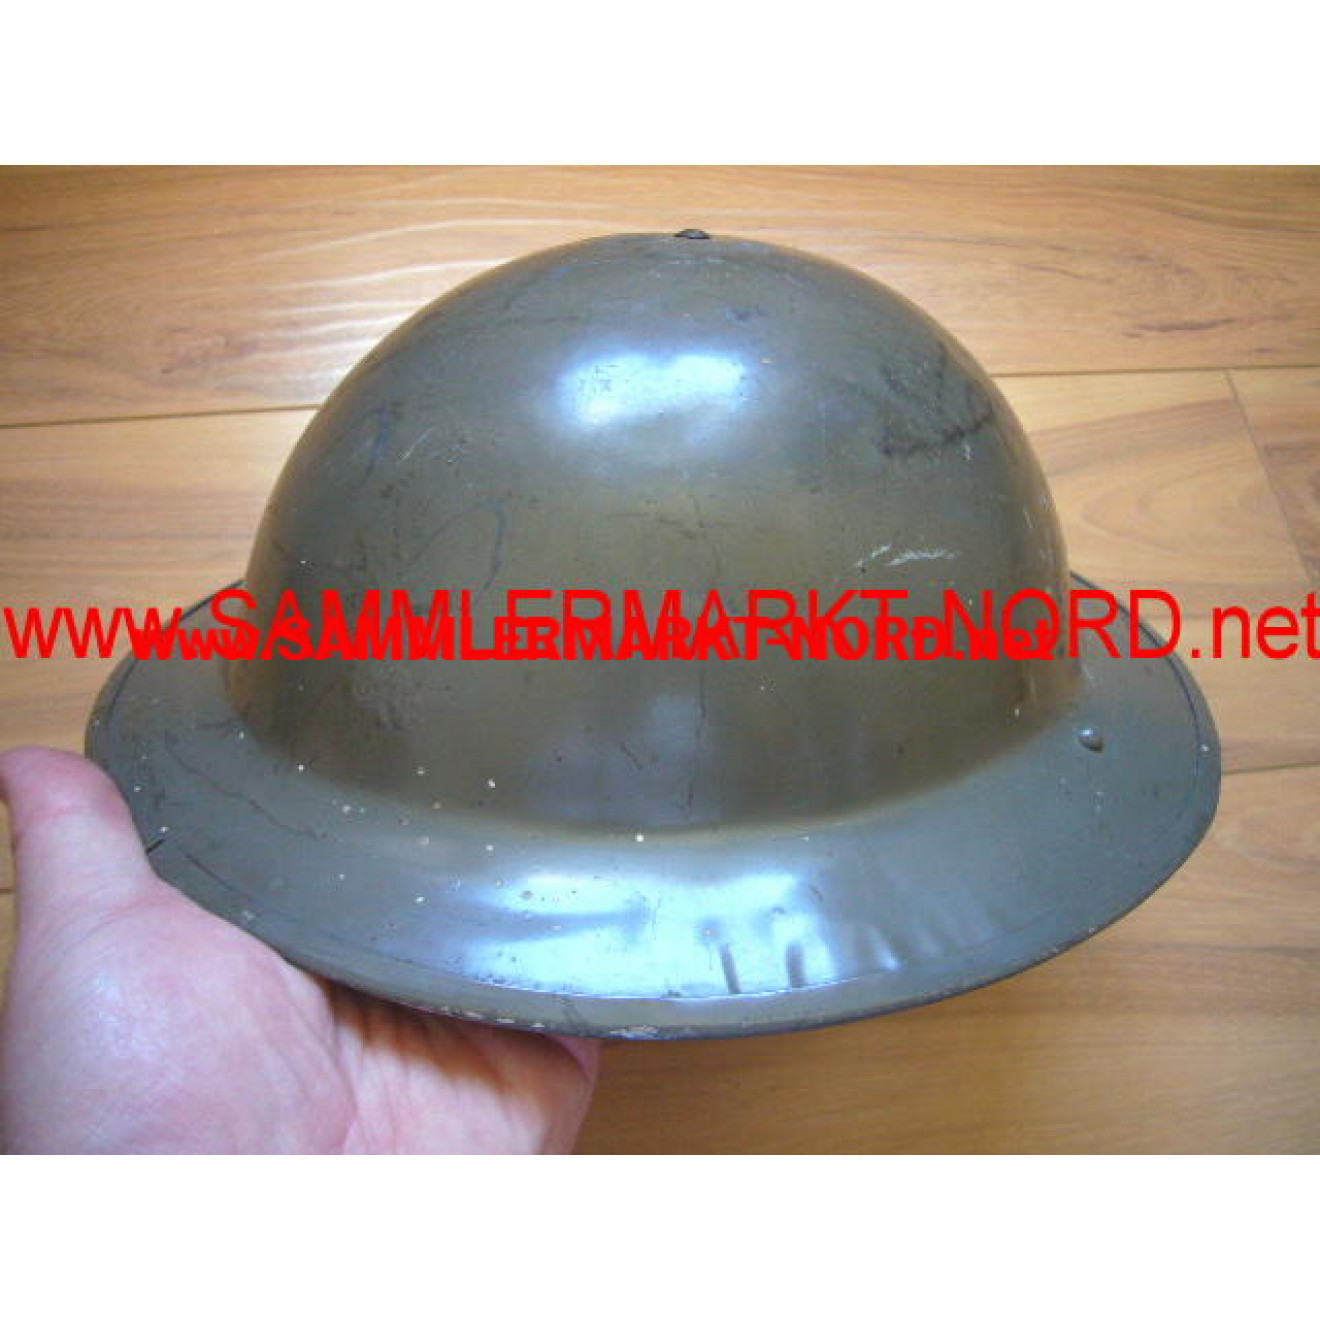 English steel helmet (1941)